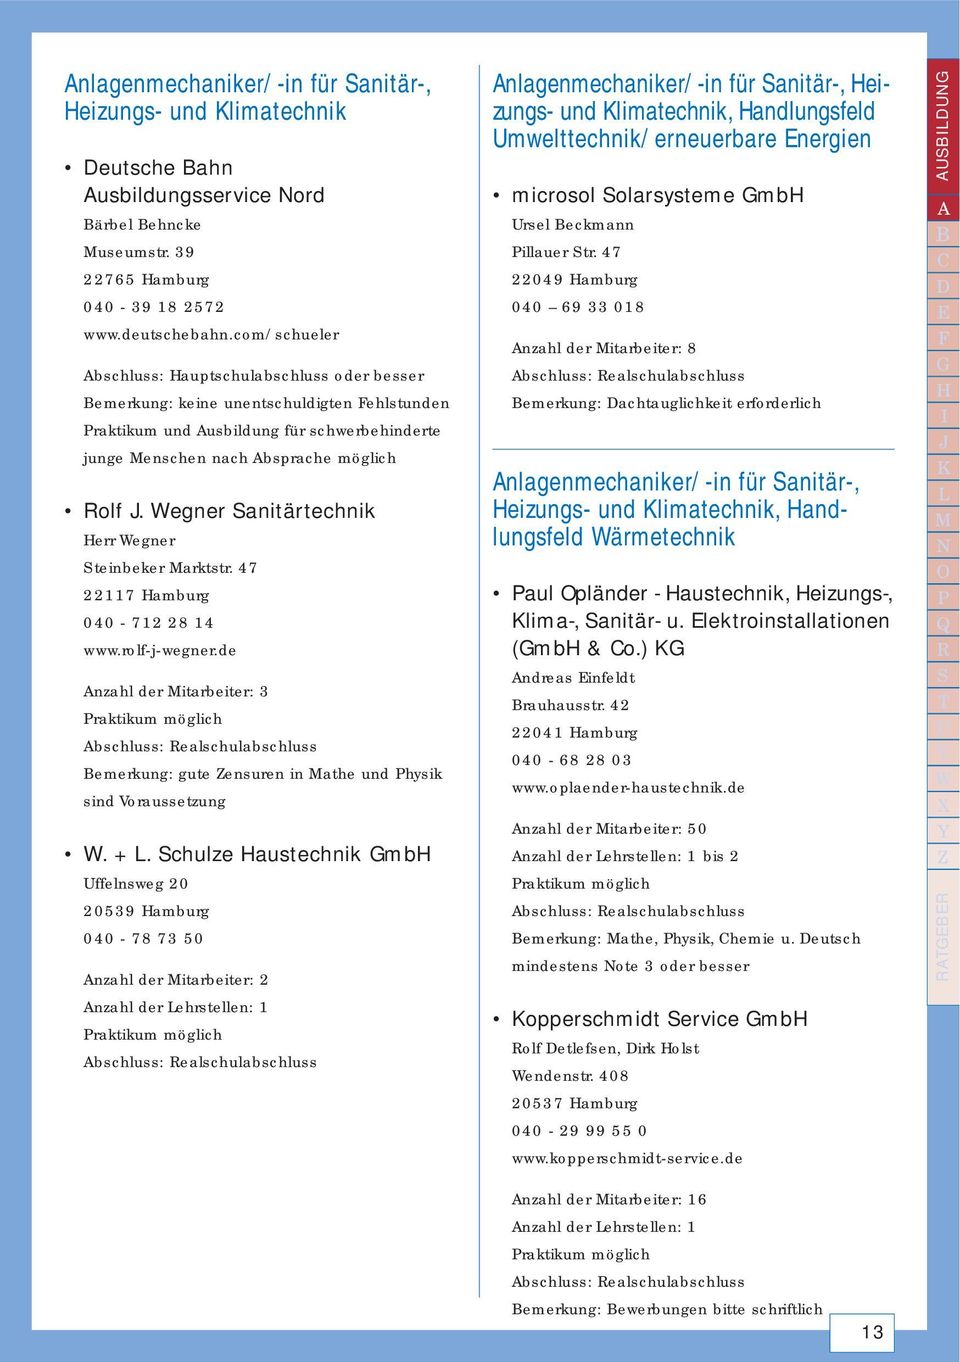 Wegner Sanitärtechnik Herr Wegner Steinbeker Marktstr. 47 22117 Hamburg 040-712 28 14 www.rolf-j-wegner.de Anzahl der Mitarbeiter: 3 Bemerkung: gute Zensuren in Mathe und Physik sind Voraussetzung W.